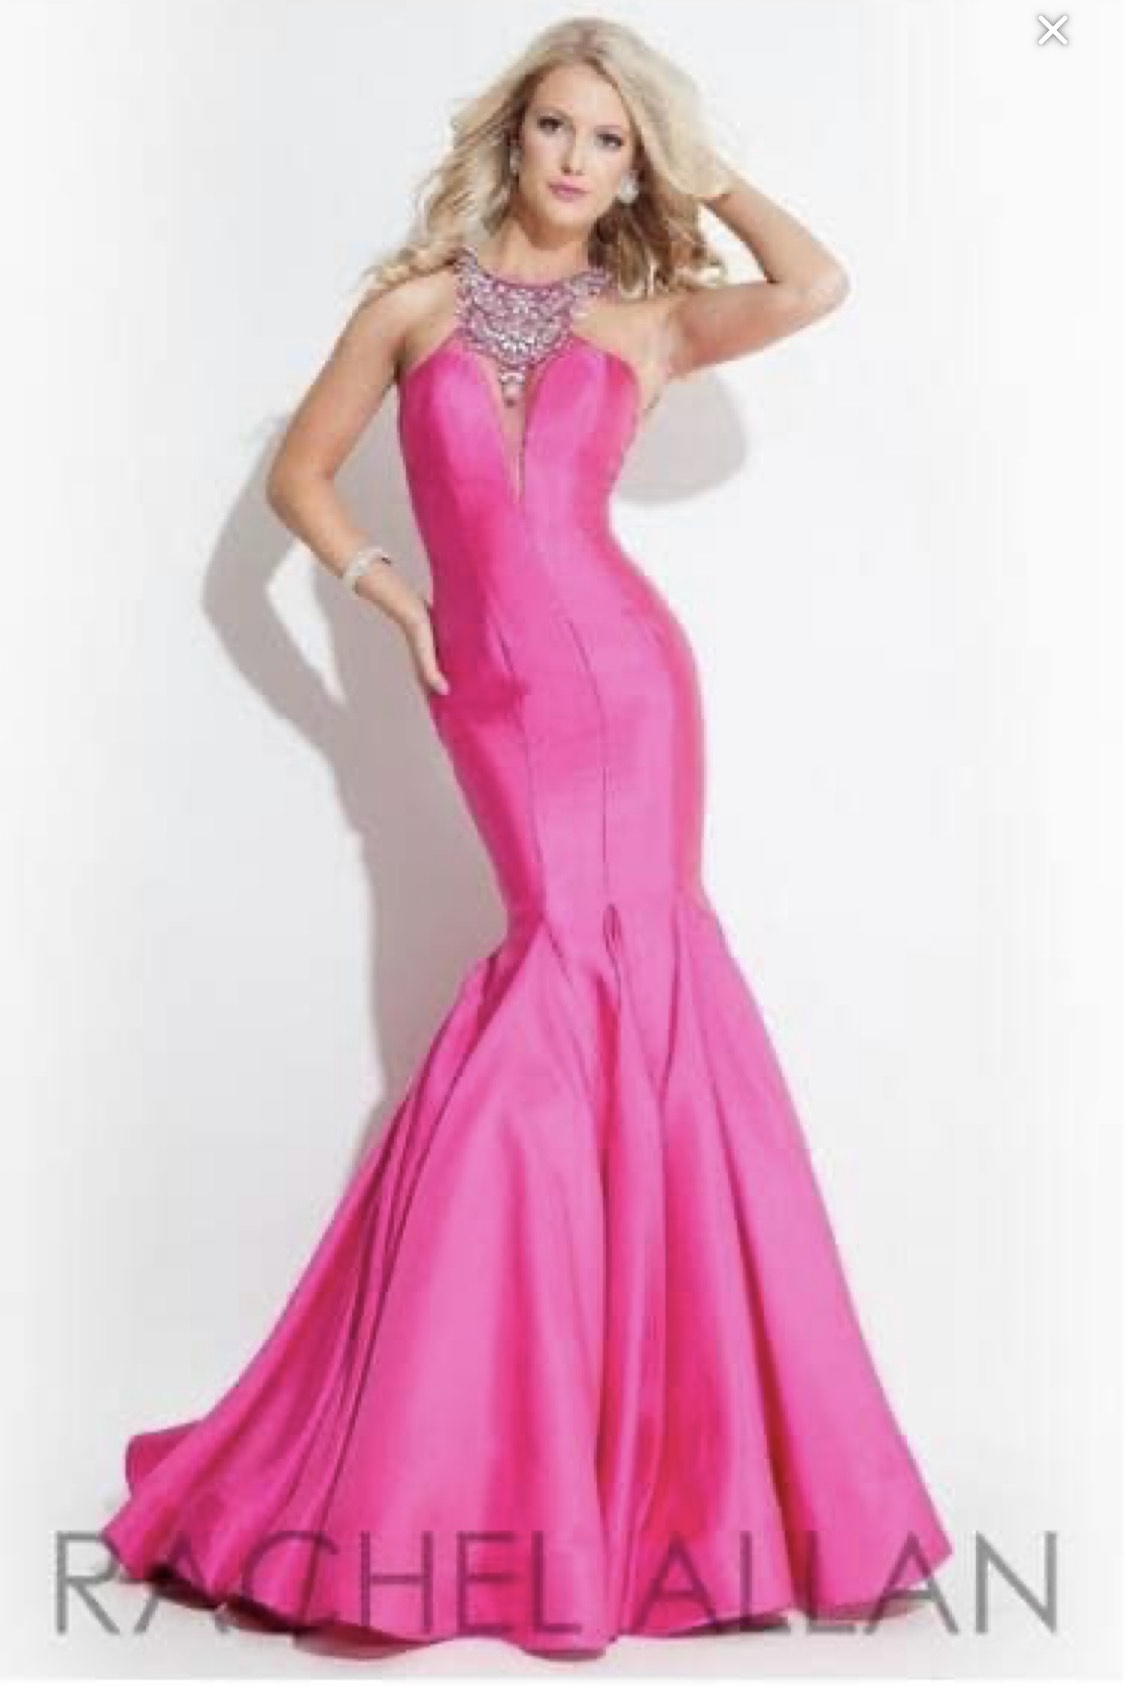 Rachel Allan Size 8 Pink Mermaid Dress on Queenly